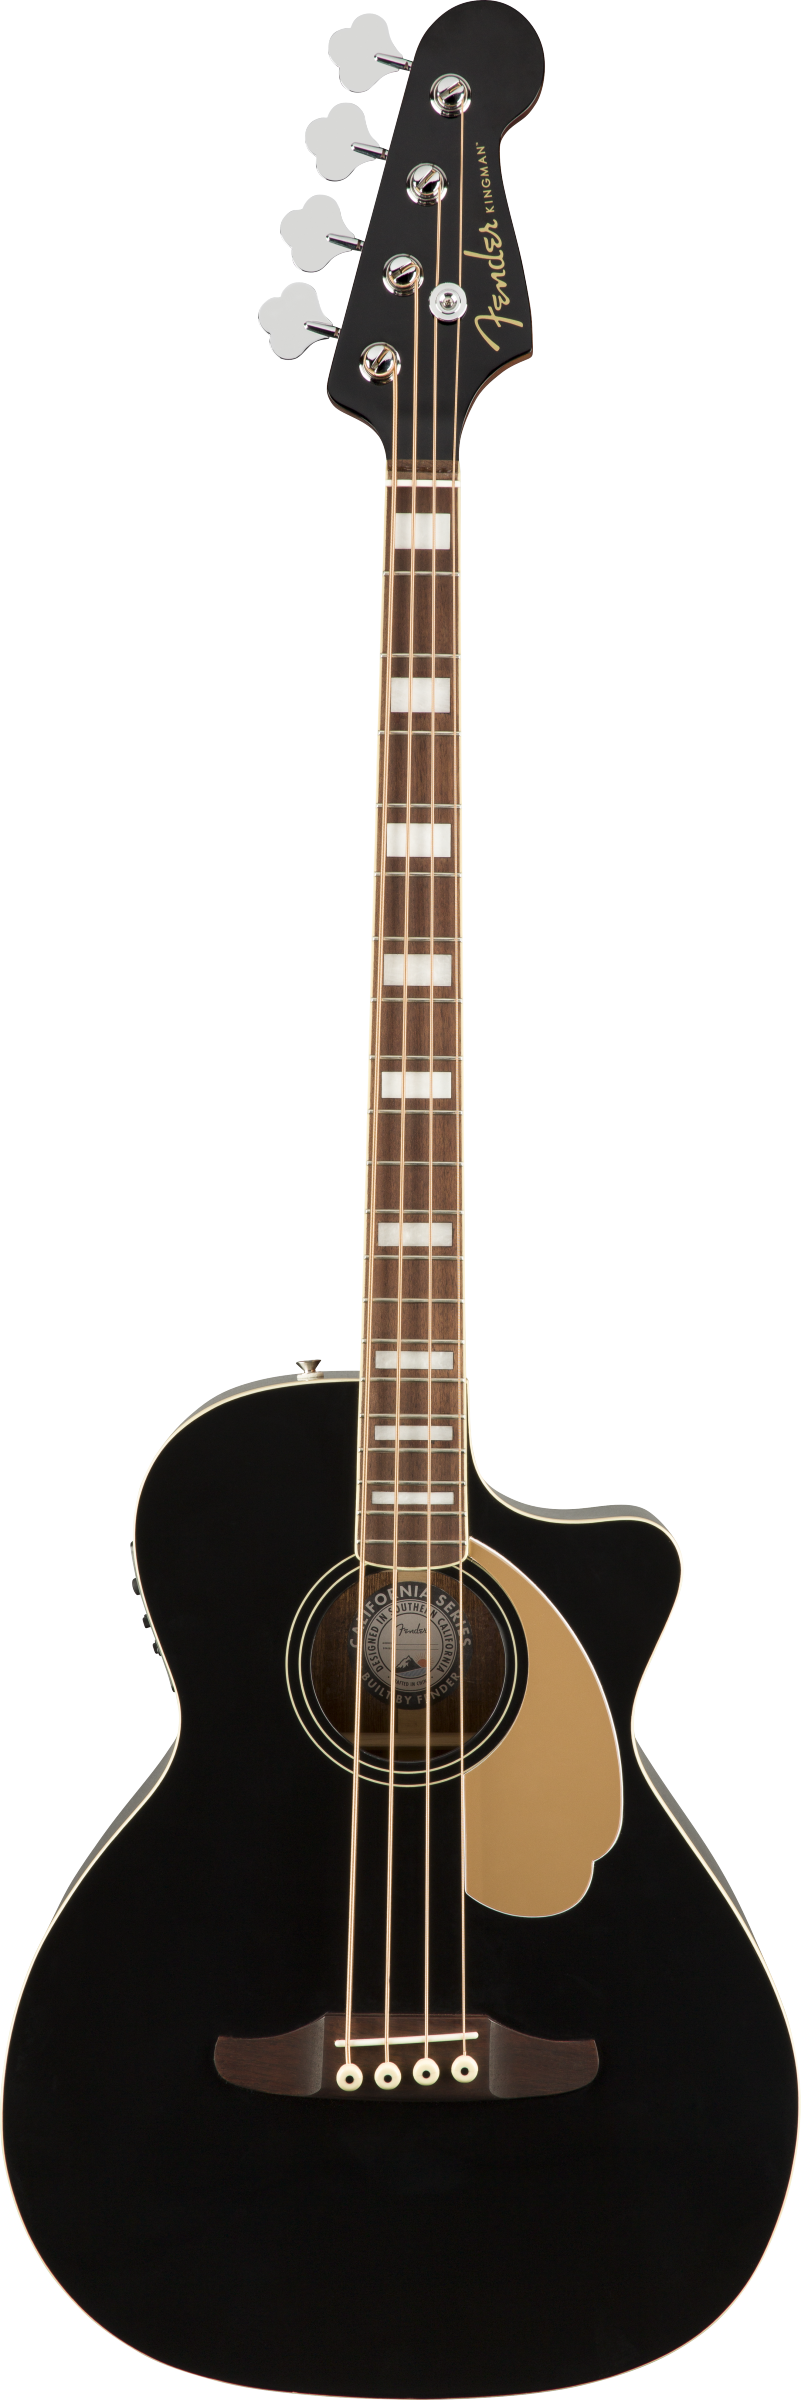 Fender Kingman Bass - Black